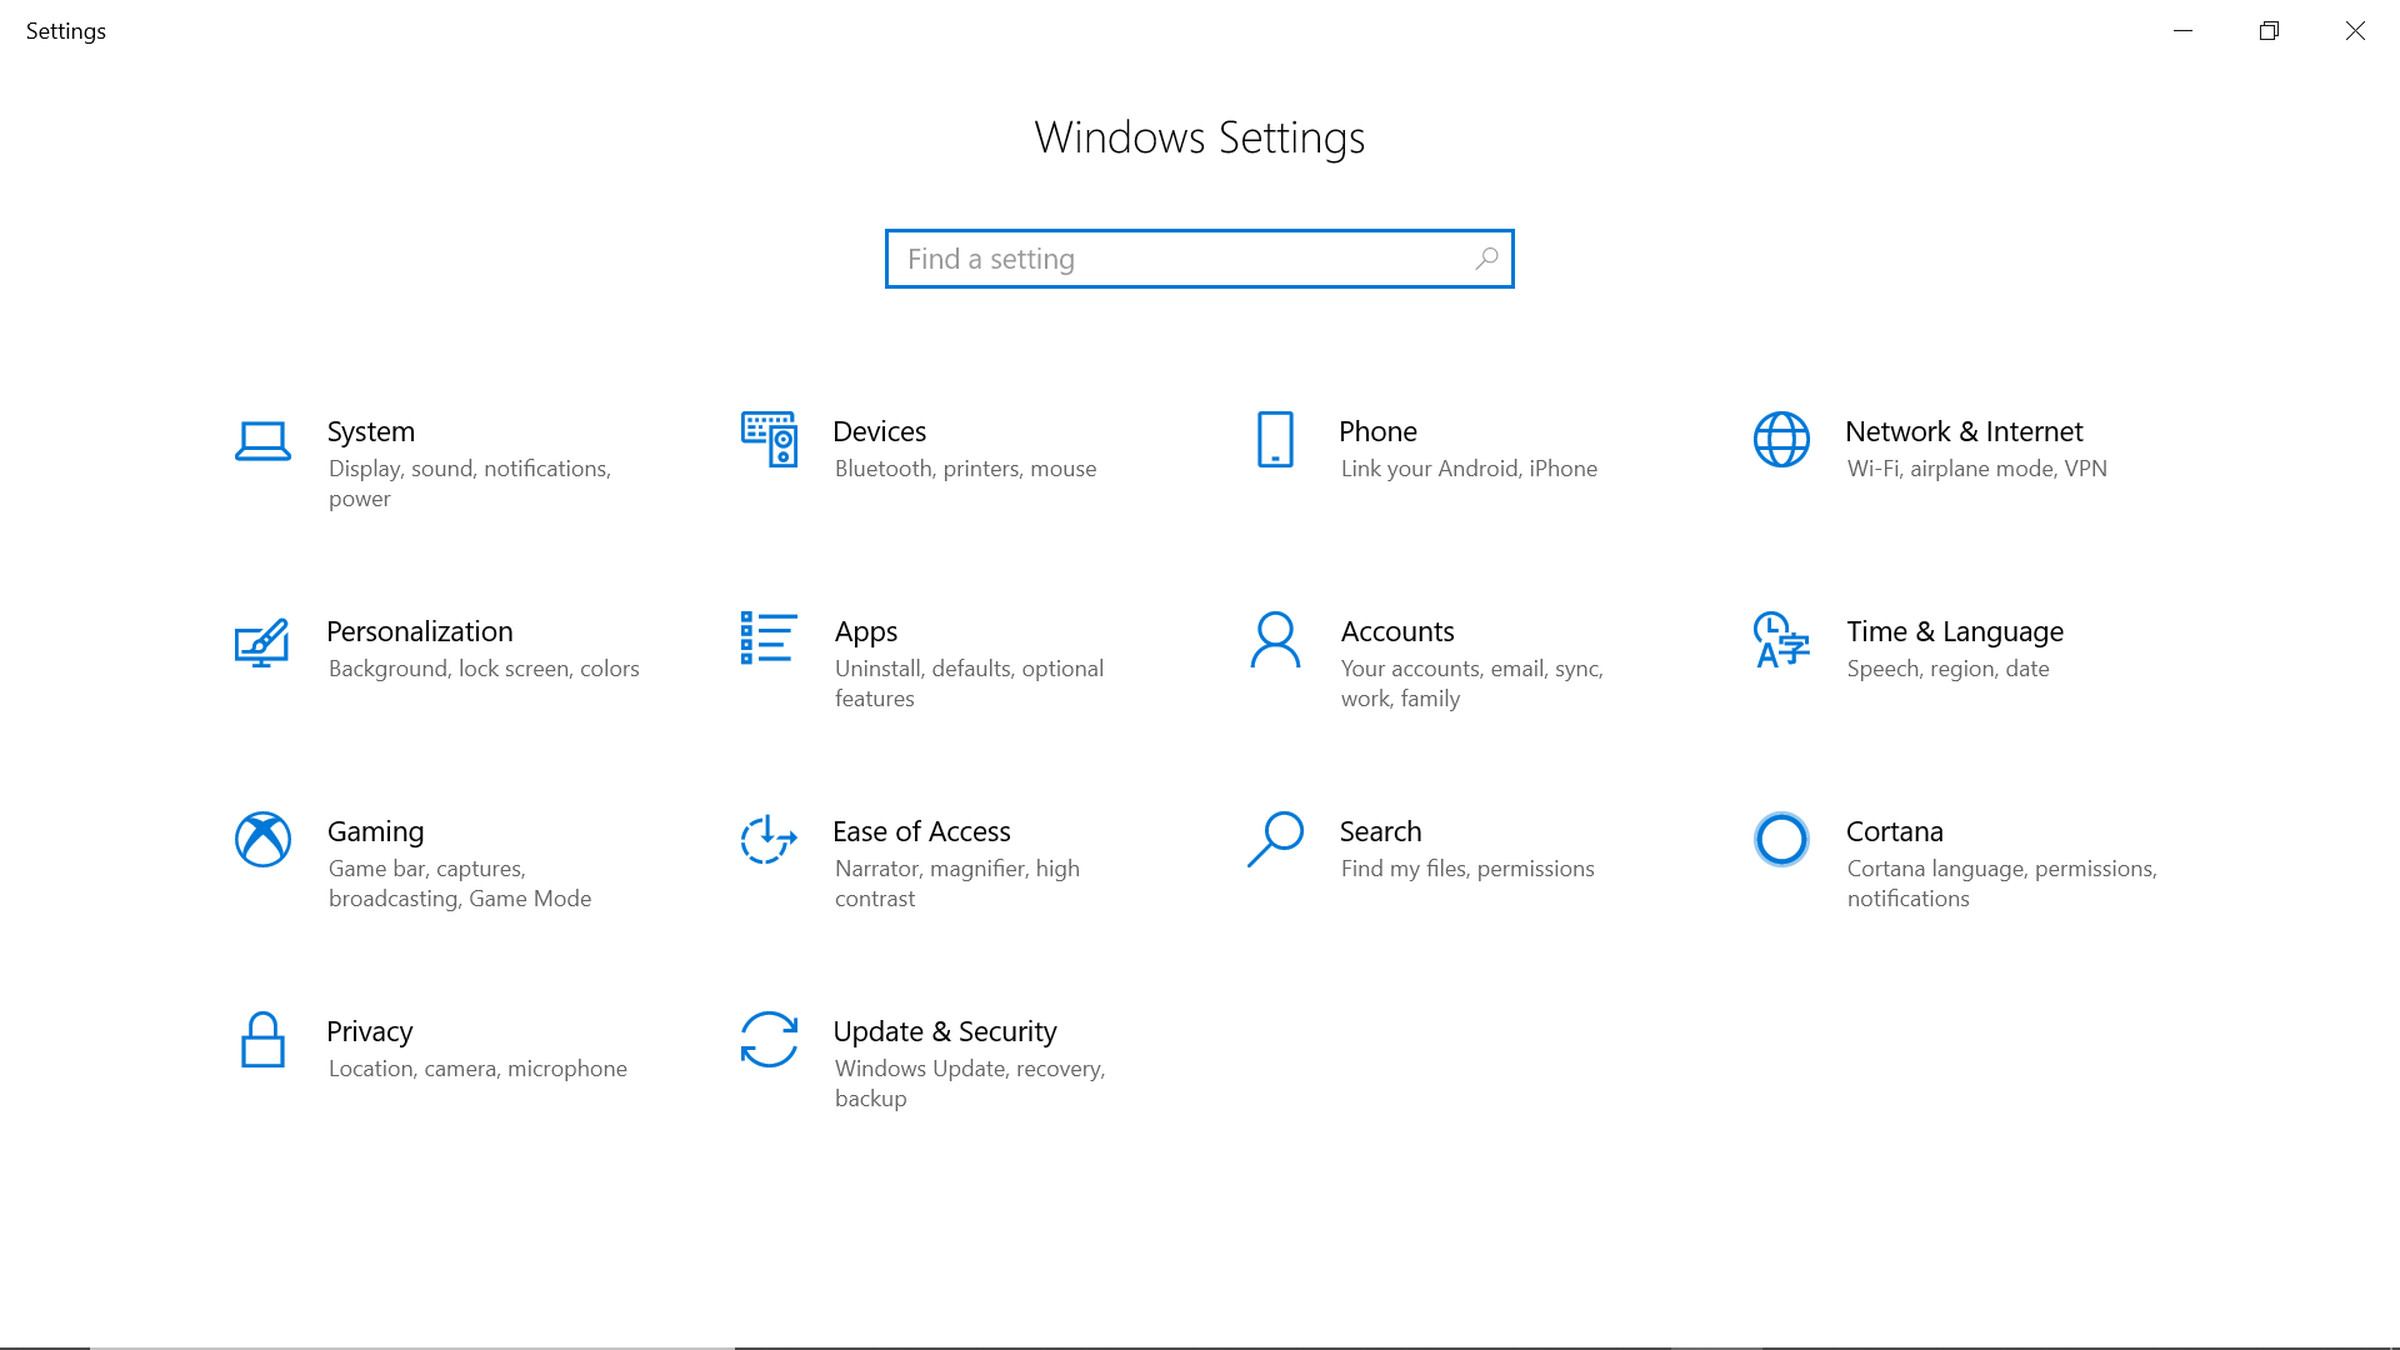 Windows Settings menu